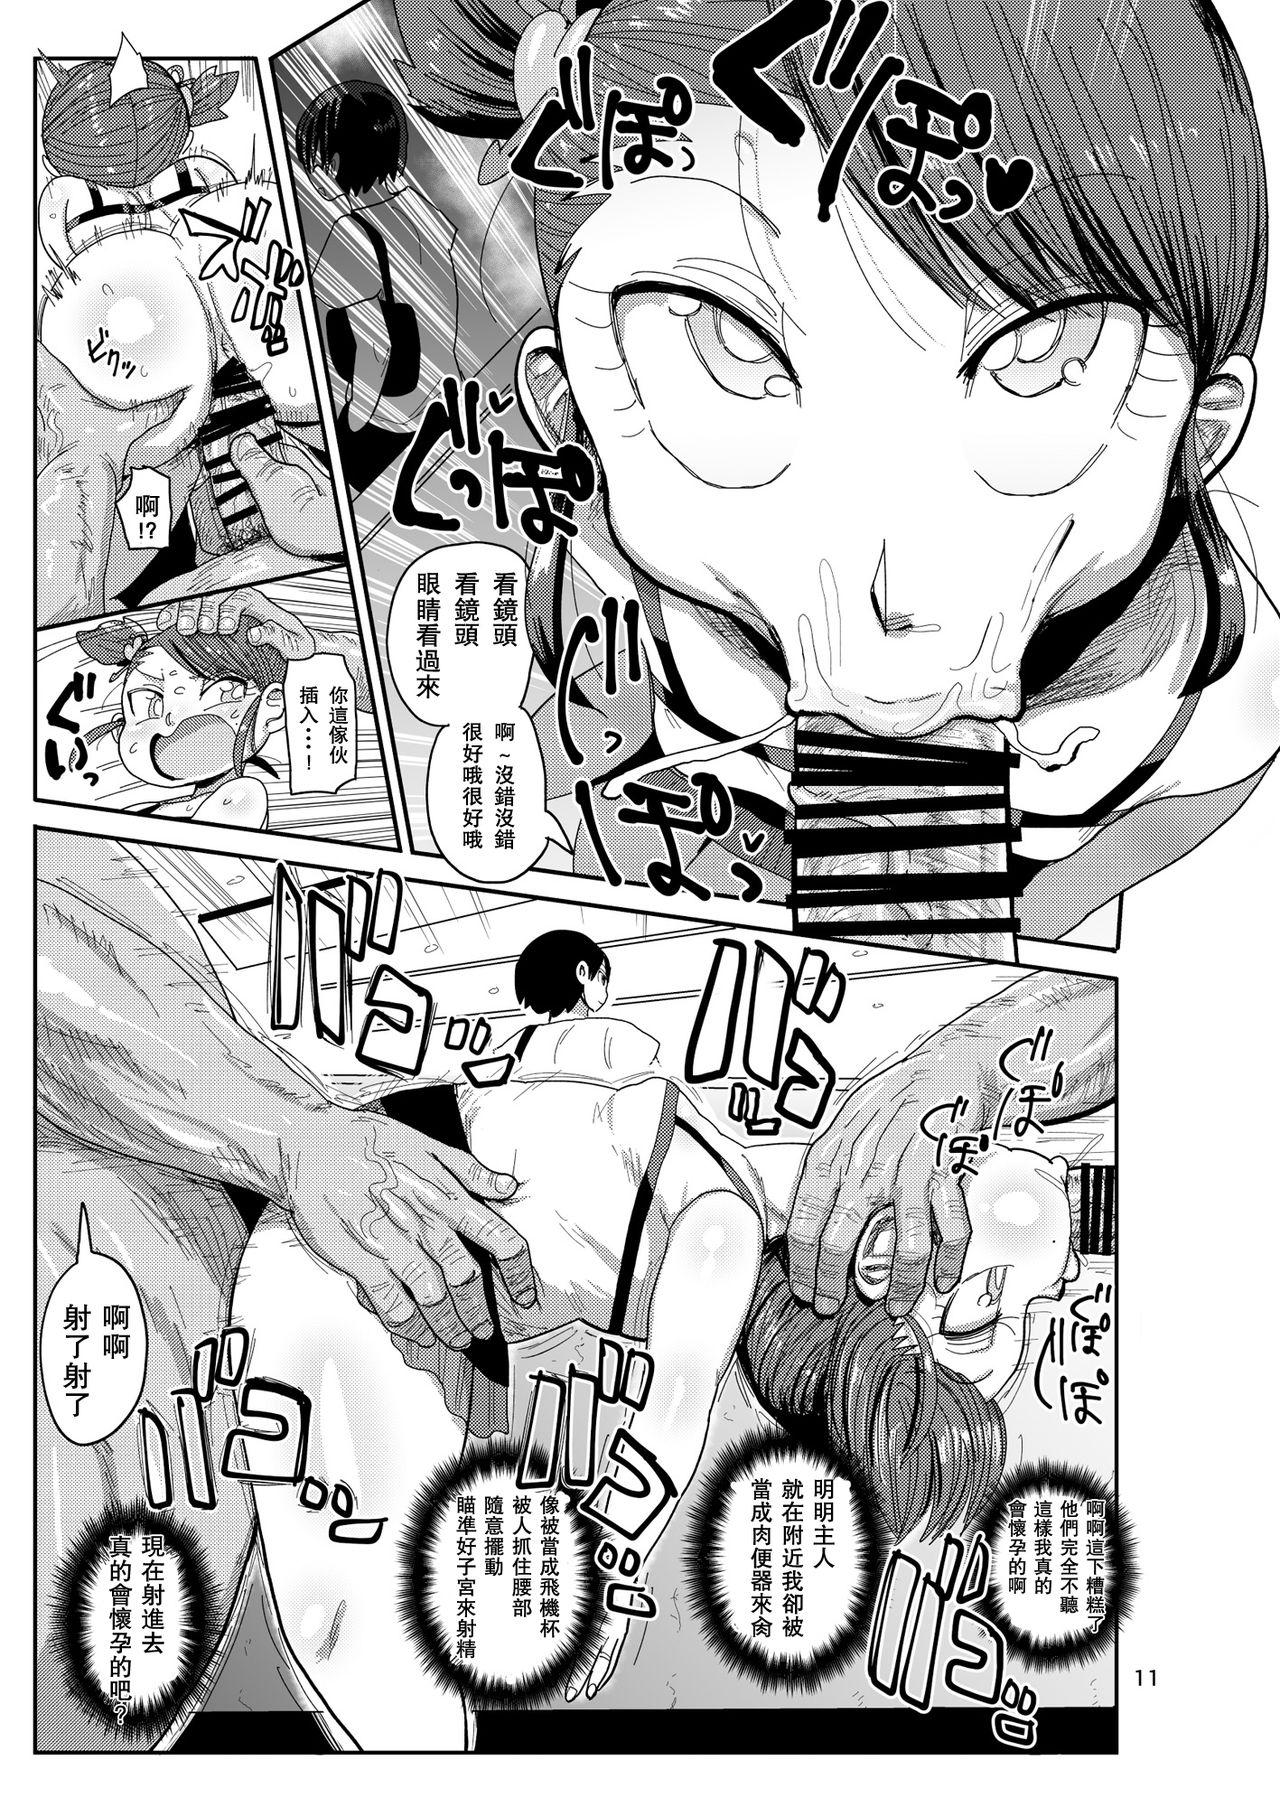 Twistys Watashi no Mawari ni wa Kiken ga Ippai! - Original Ex Gf - Page 10